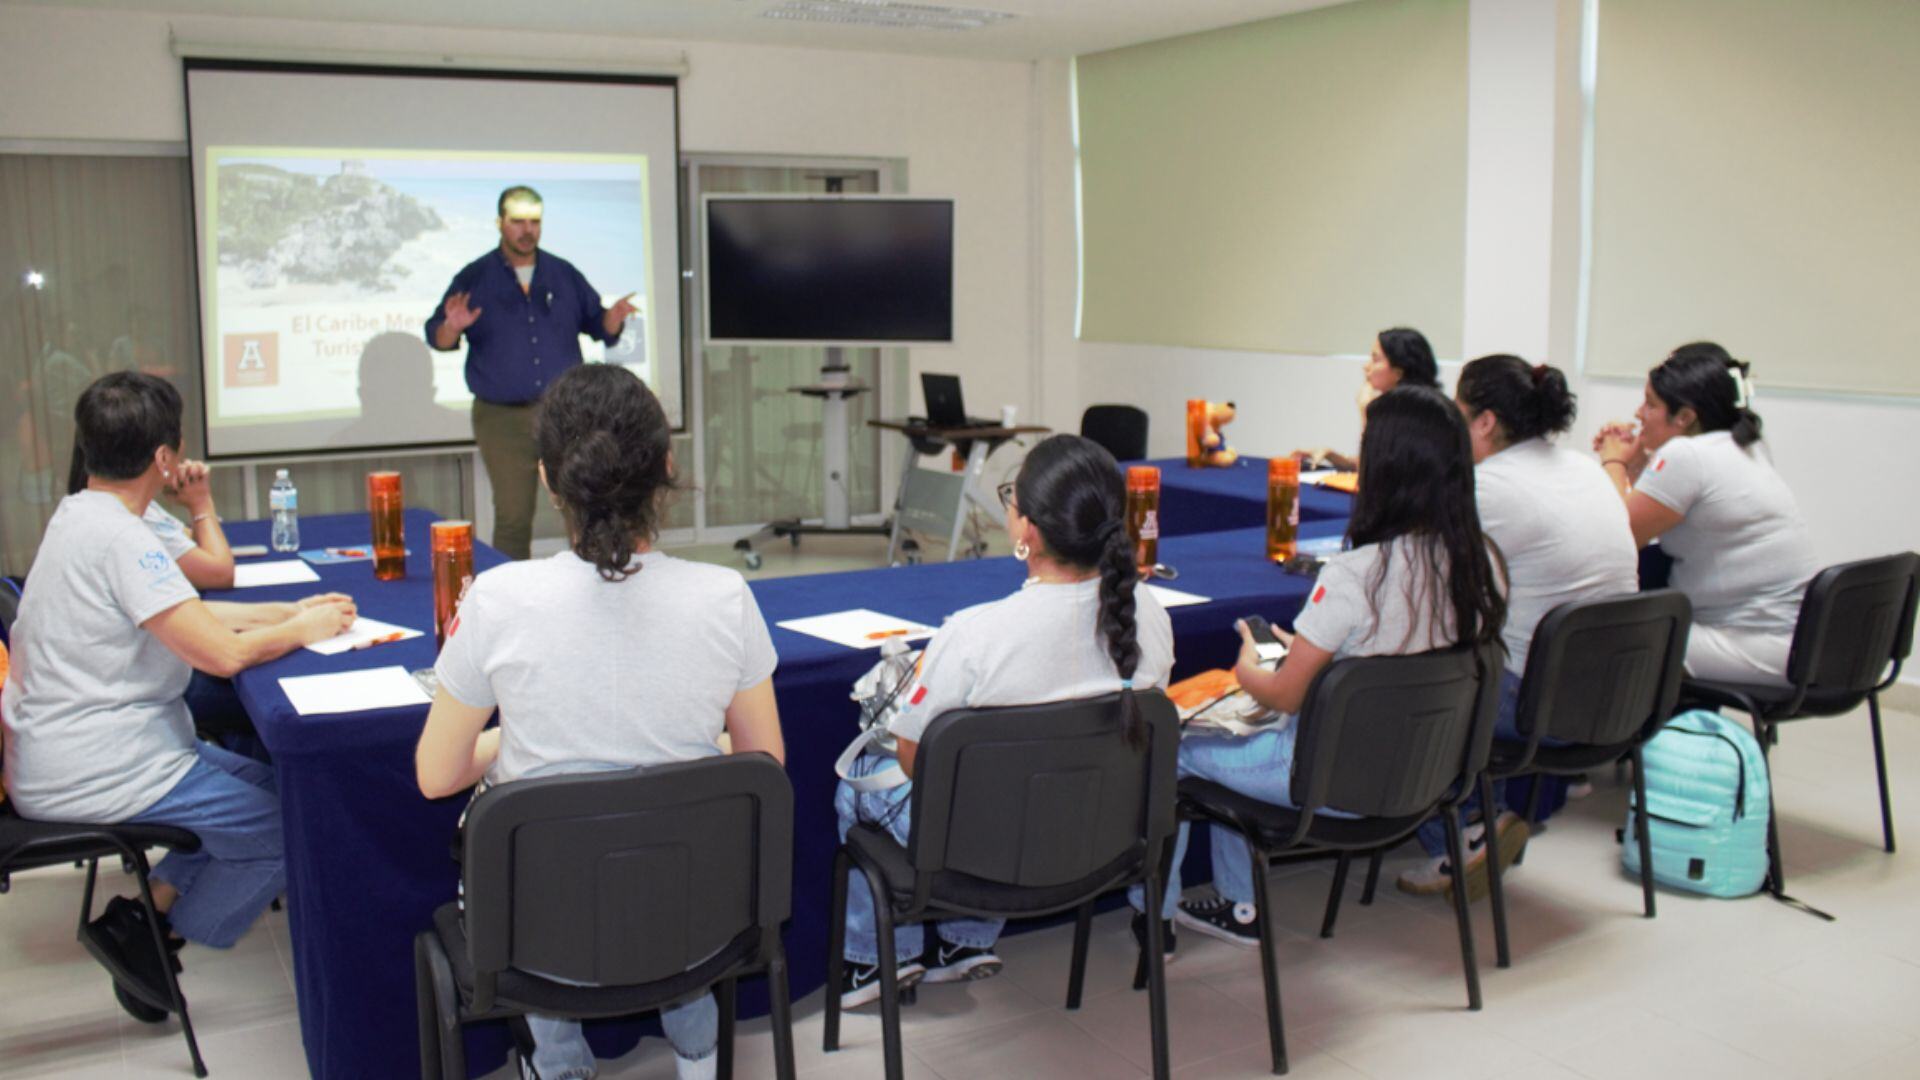 Universidad Anáhuac Cancún Impulsa el Turismo, la Cultura y la Gastronomía del Caribe Mexicano a través de un Curso Internacional